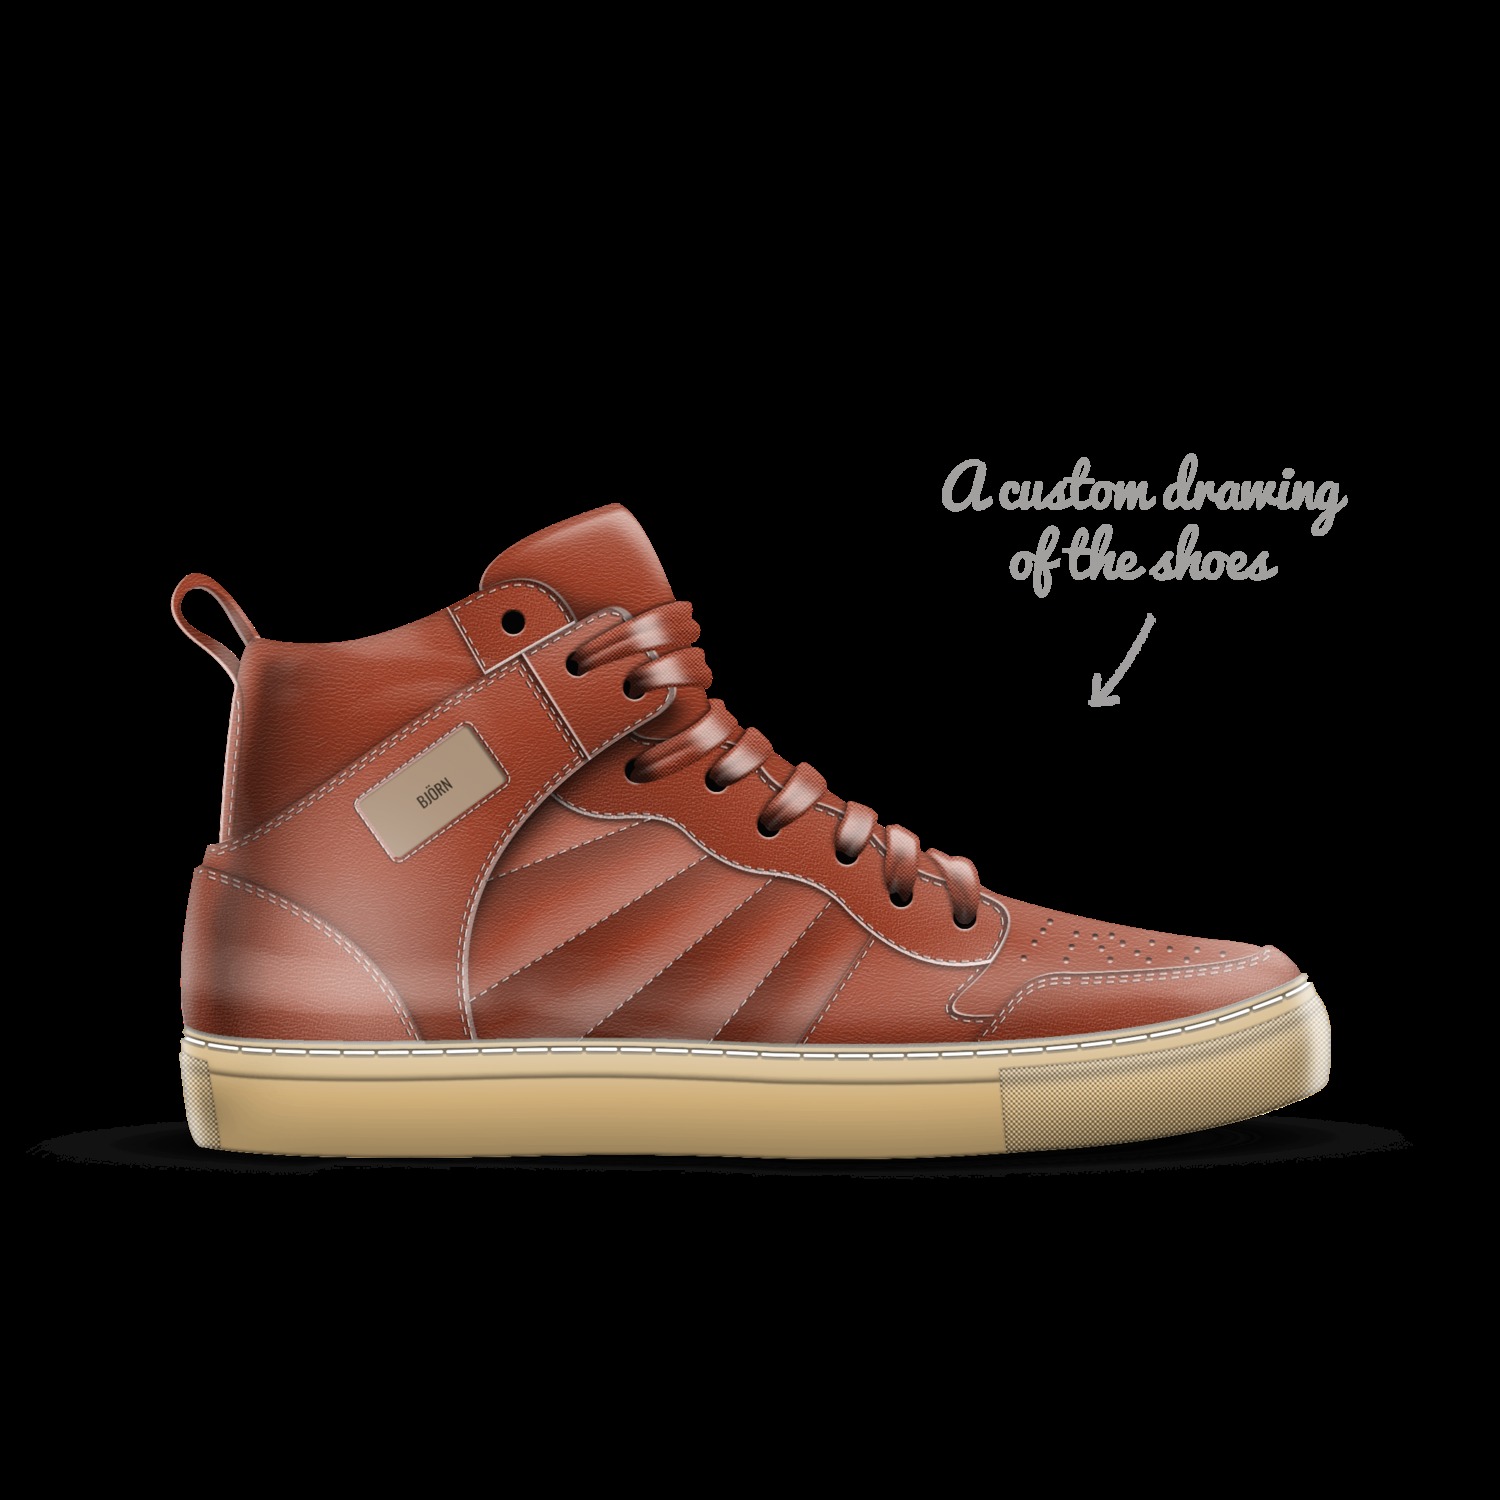 A Custom Shoe concept by Monique Gabriel